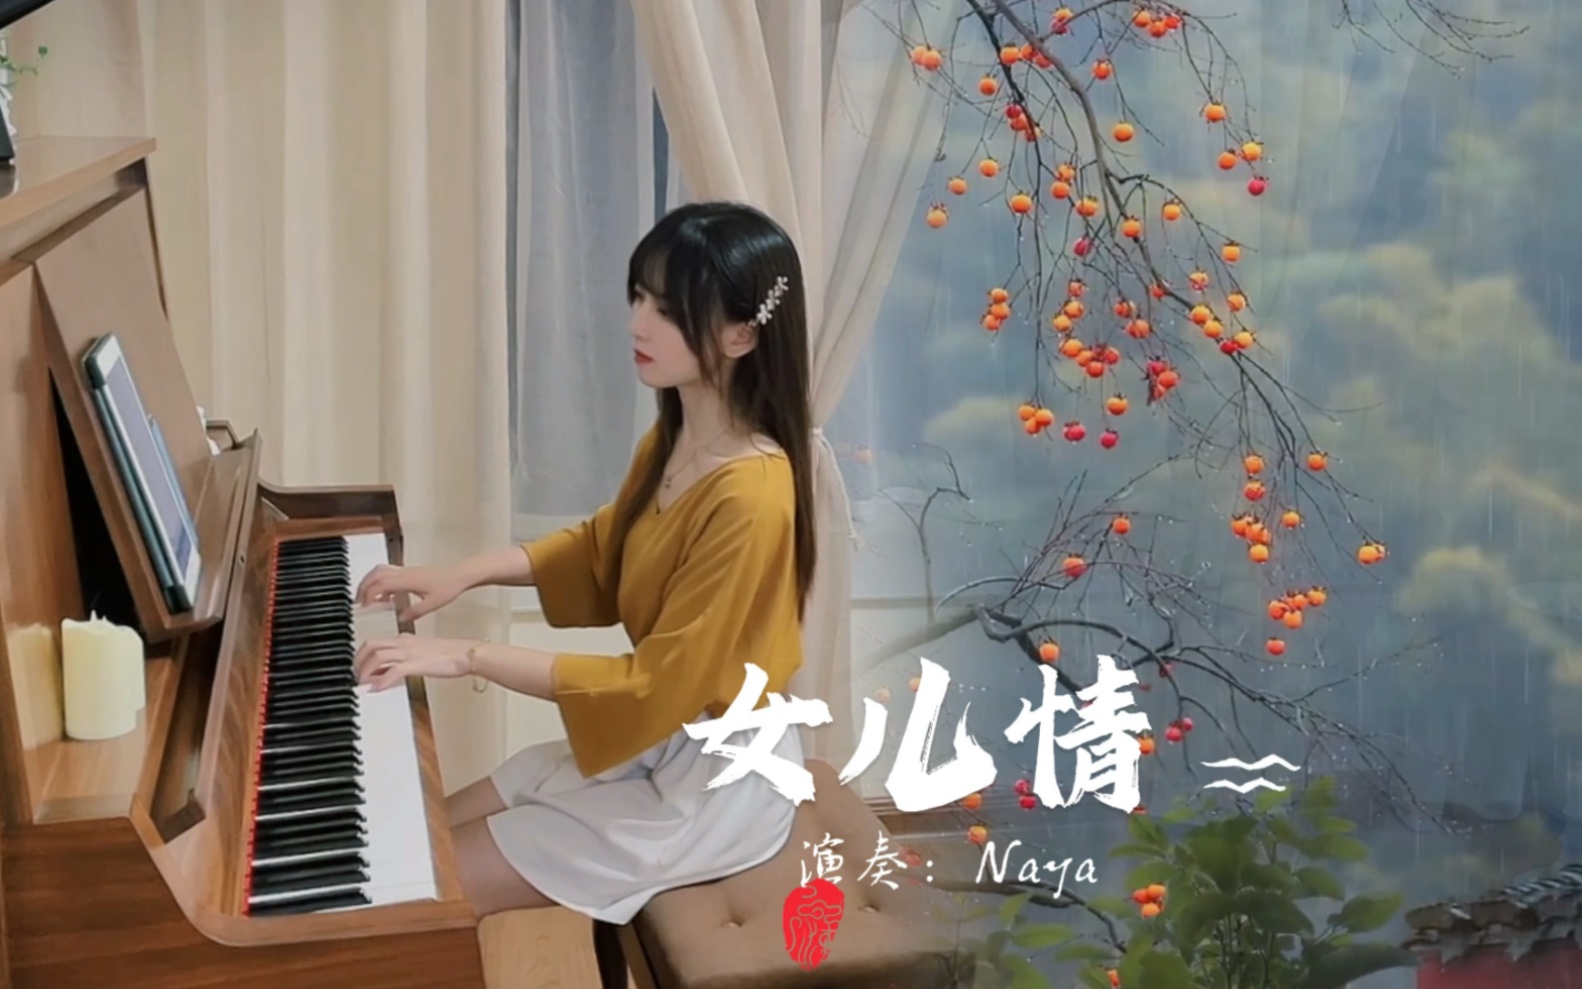 钢琴弹奏《女儿情》，柔情的旋律，情意绵绵